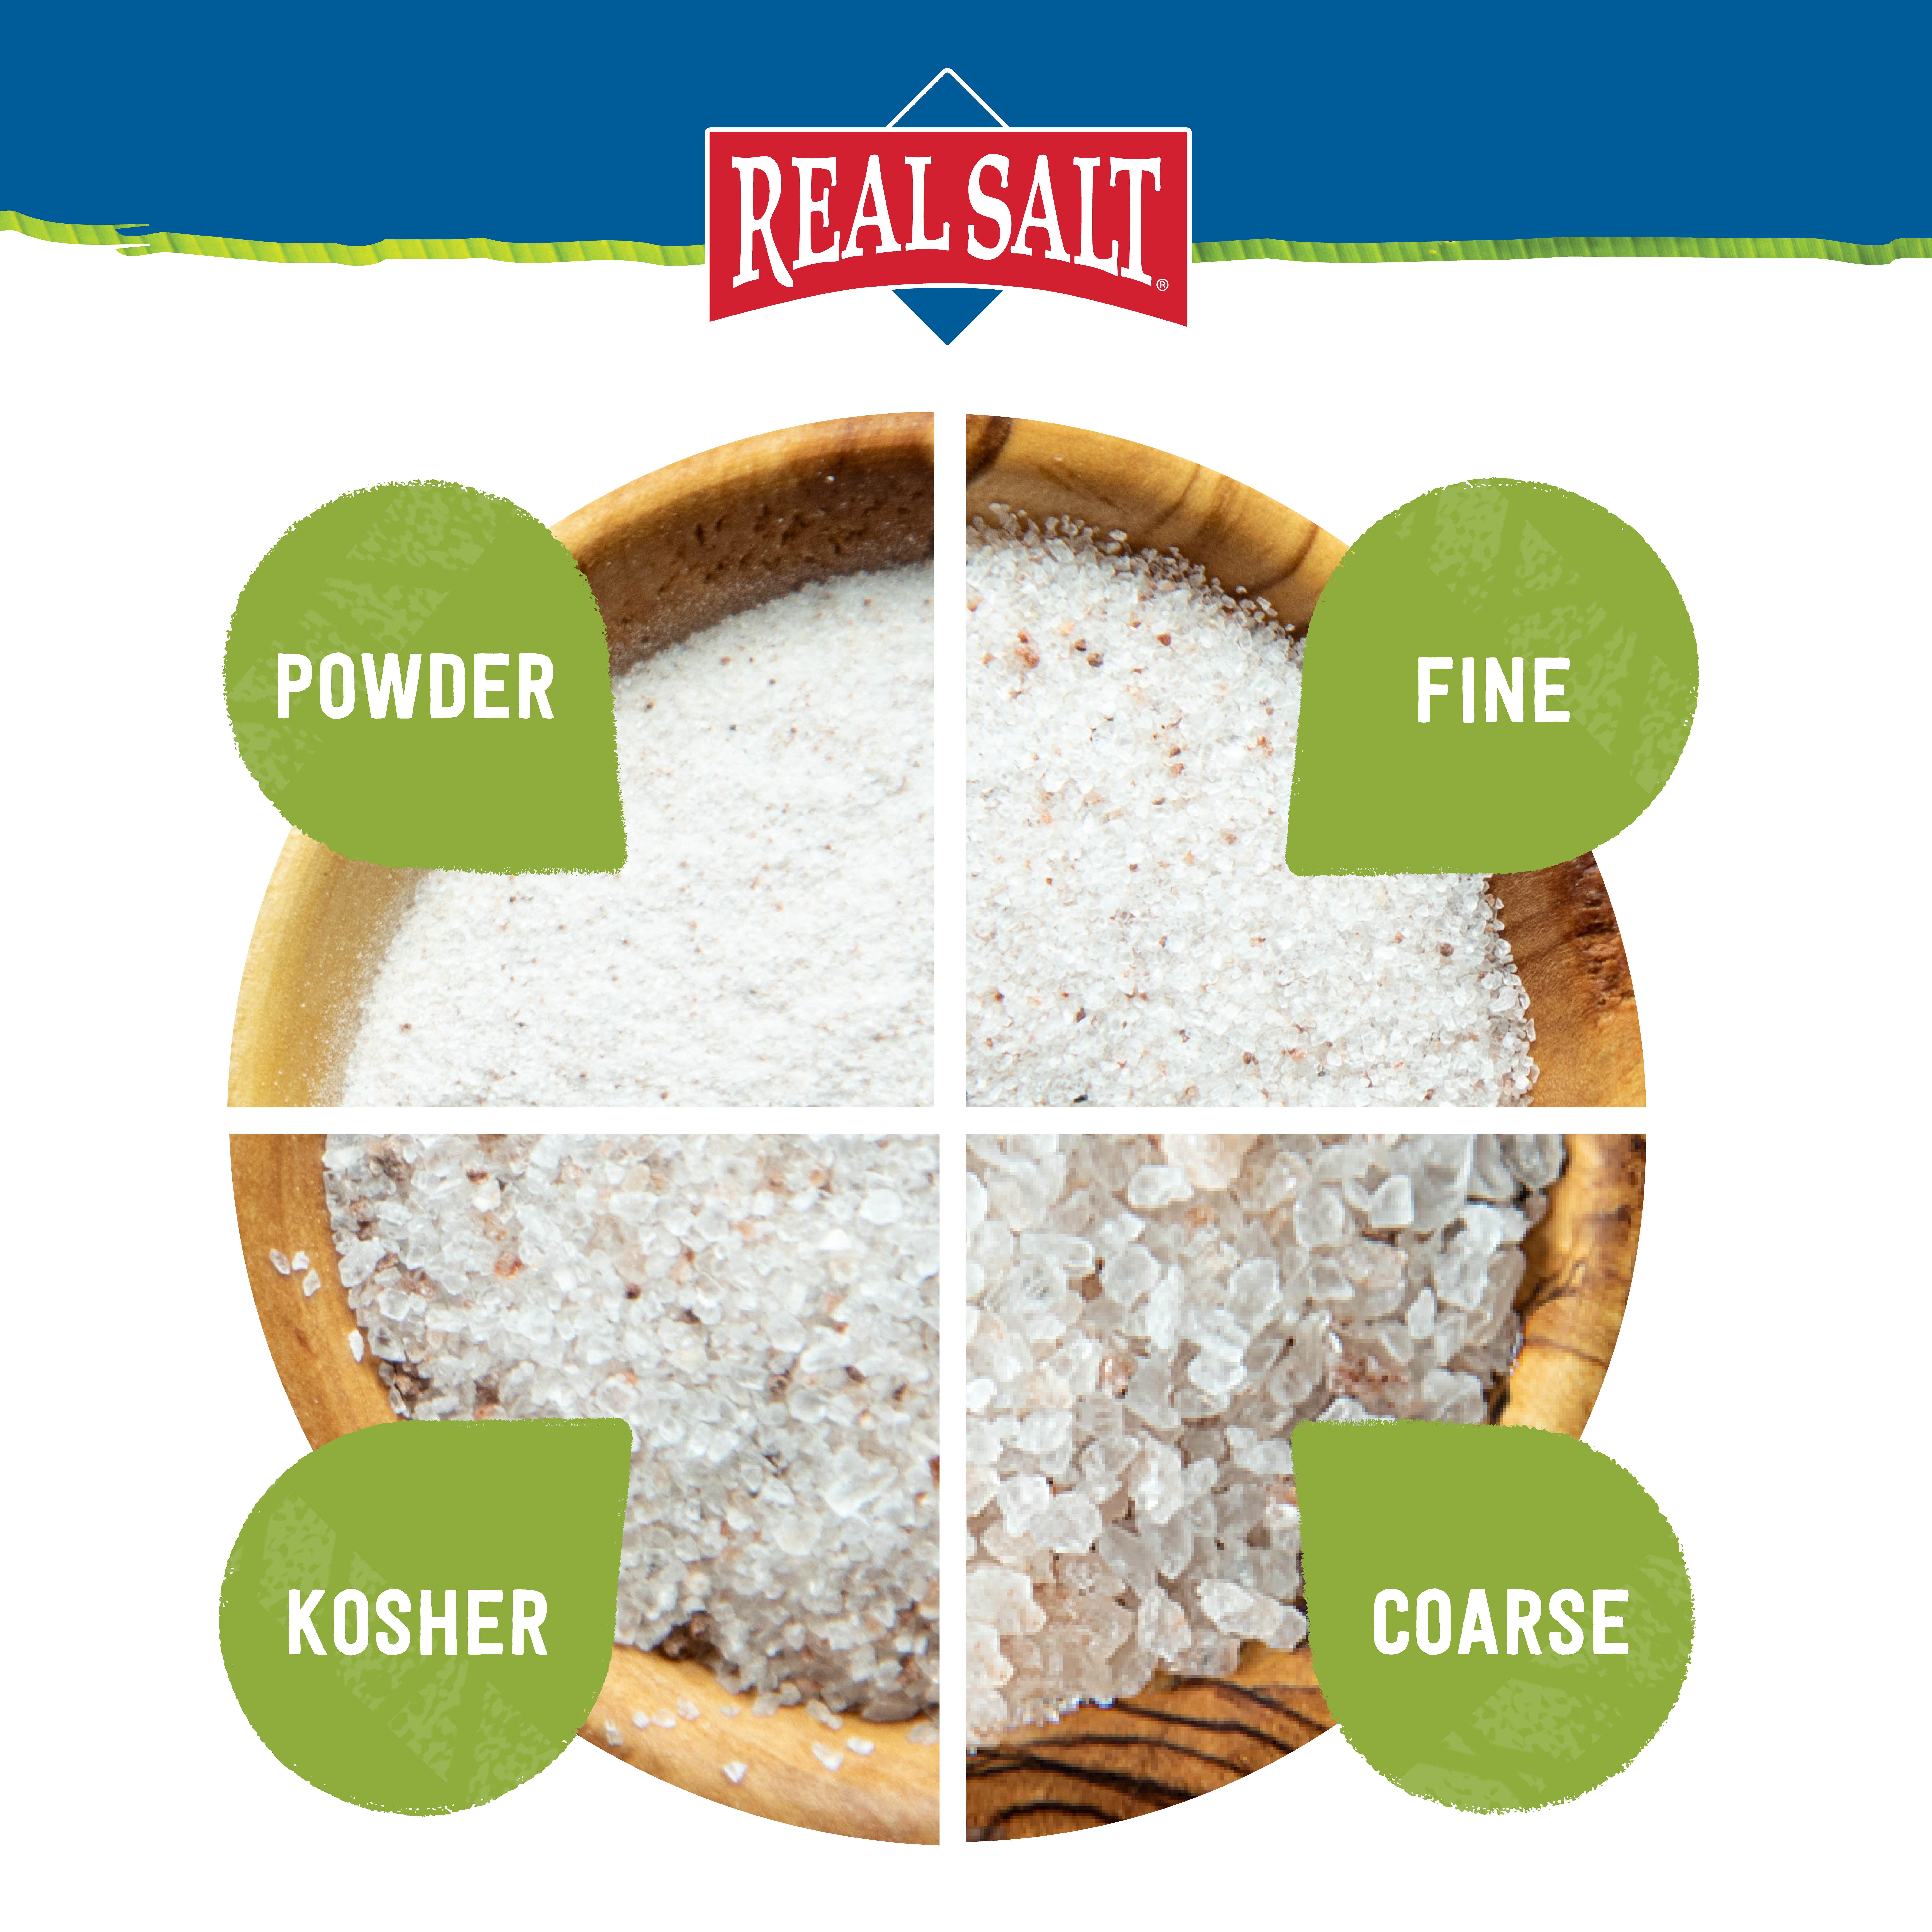 Real Salt grain size comparison chart